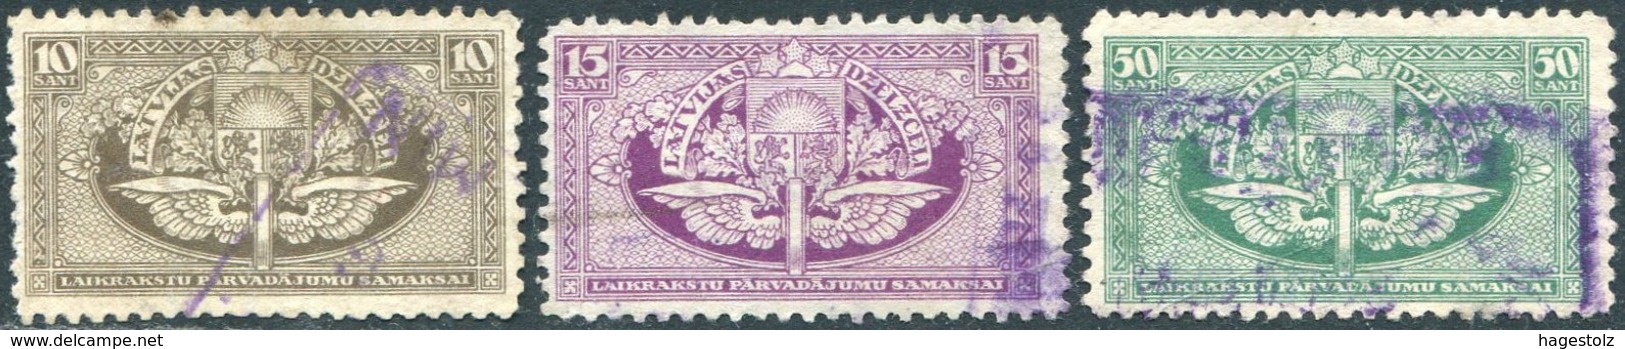 Latvia 1928 Railway Newspaper Parcel Stamps Selection Eisenbahn Paketmarke Chemin De Fer Colis Revenue Lettland Lettonie - Trenes